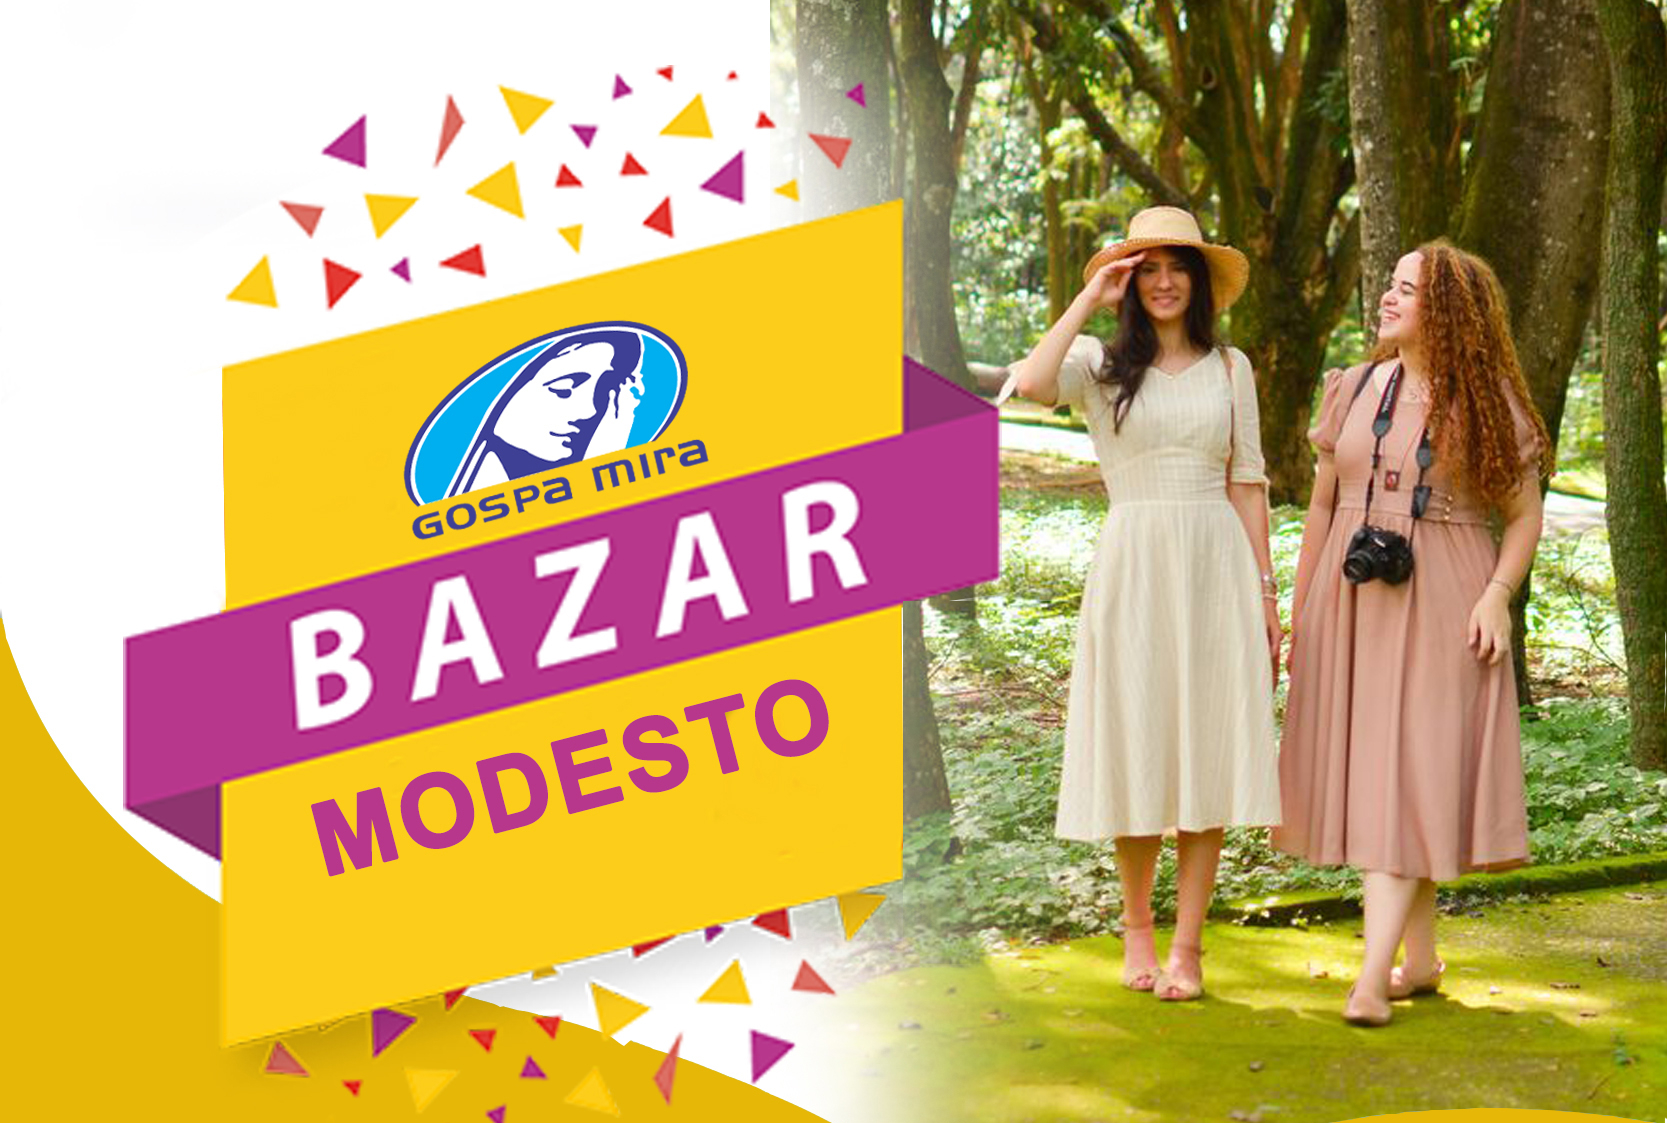 BAZAR-MODESTO-20220520083523.jpg